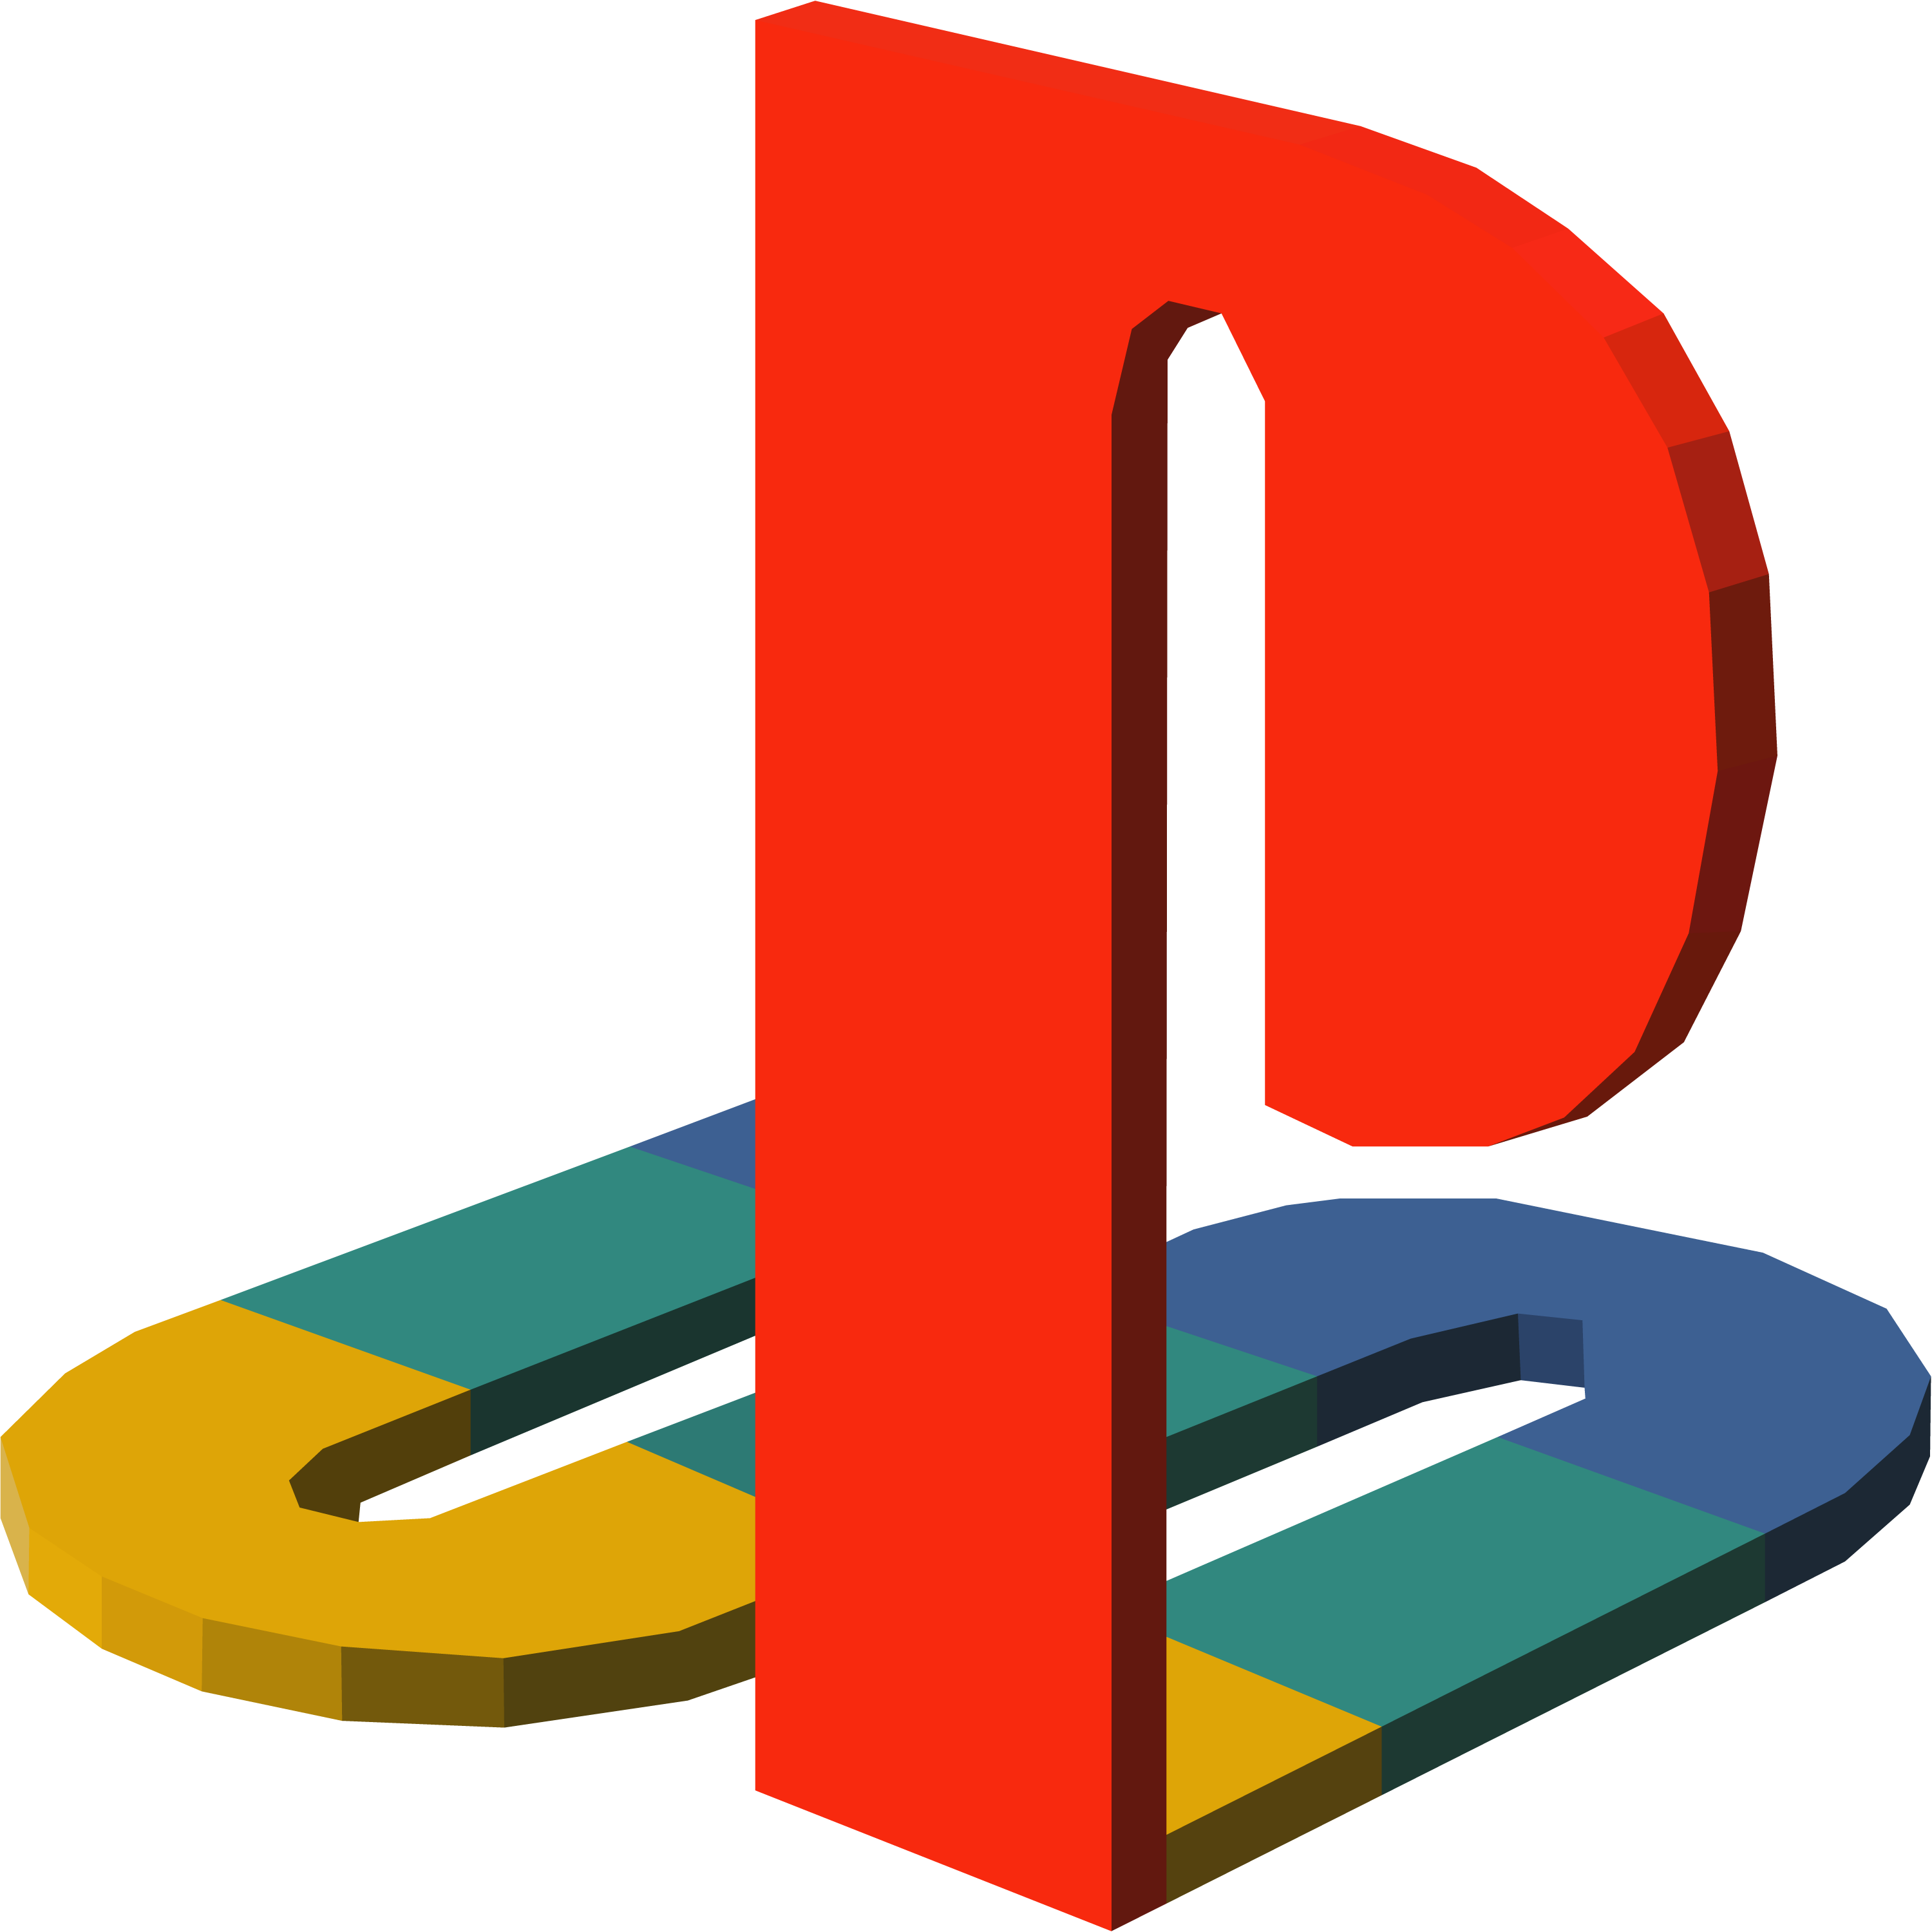 PlayStation Logo PNG Image HD